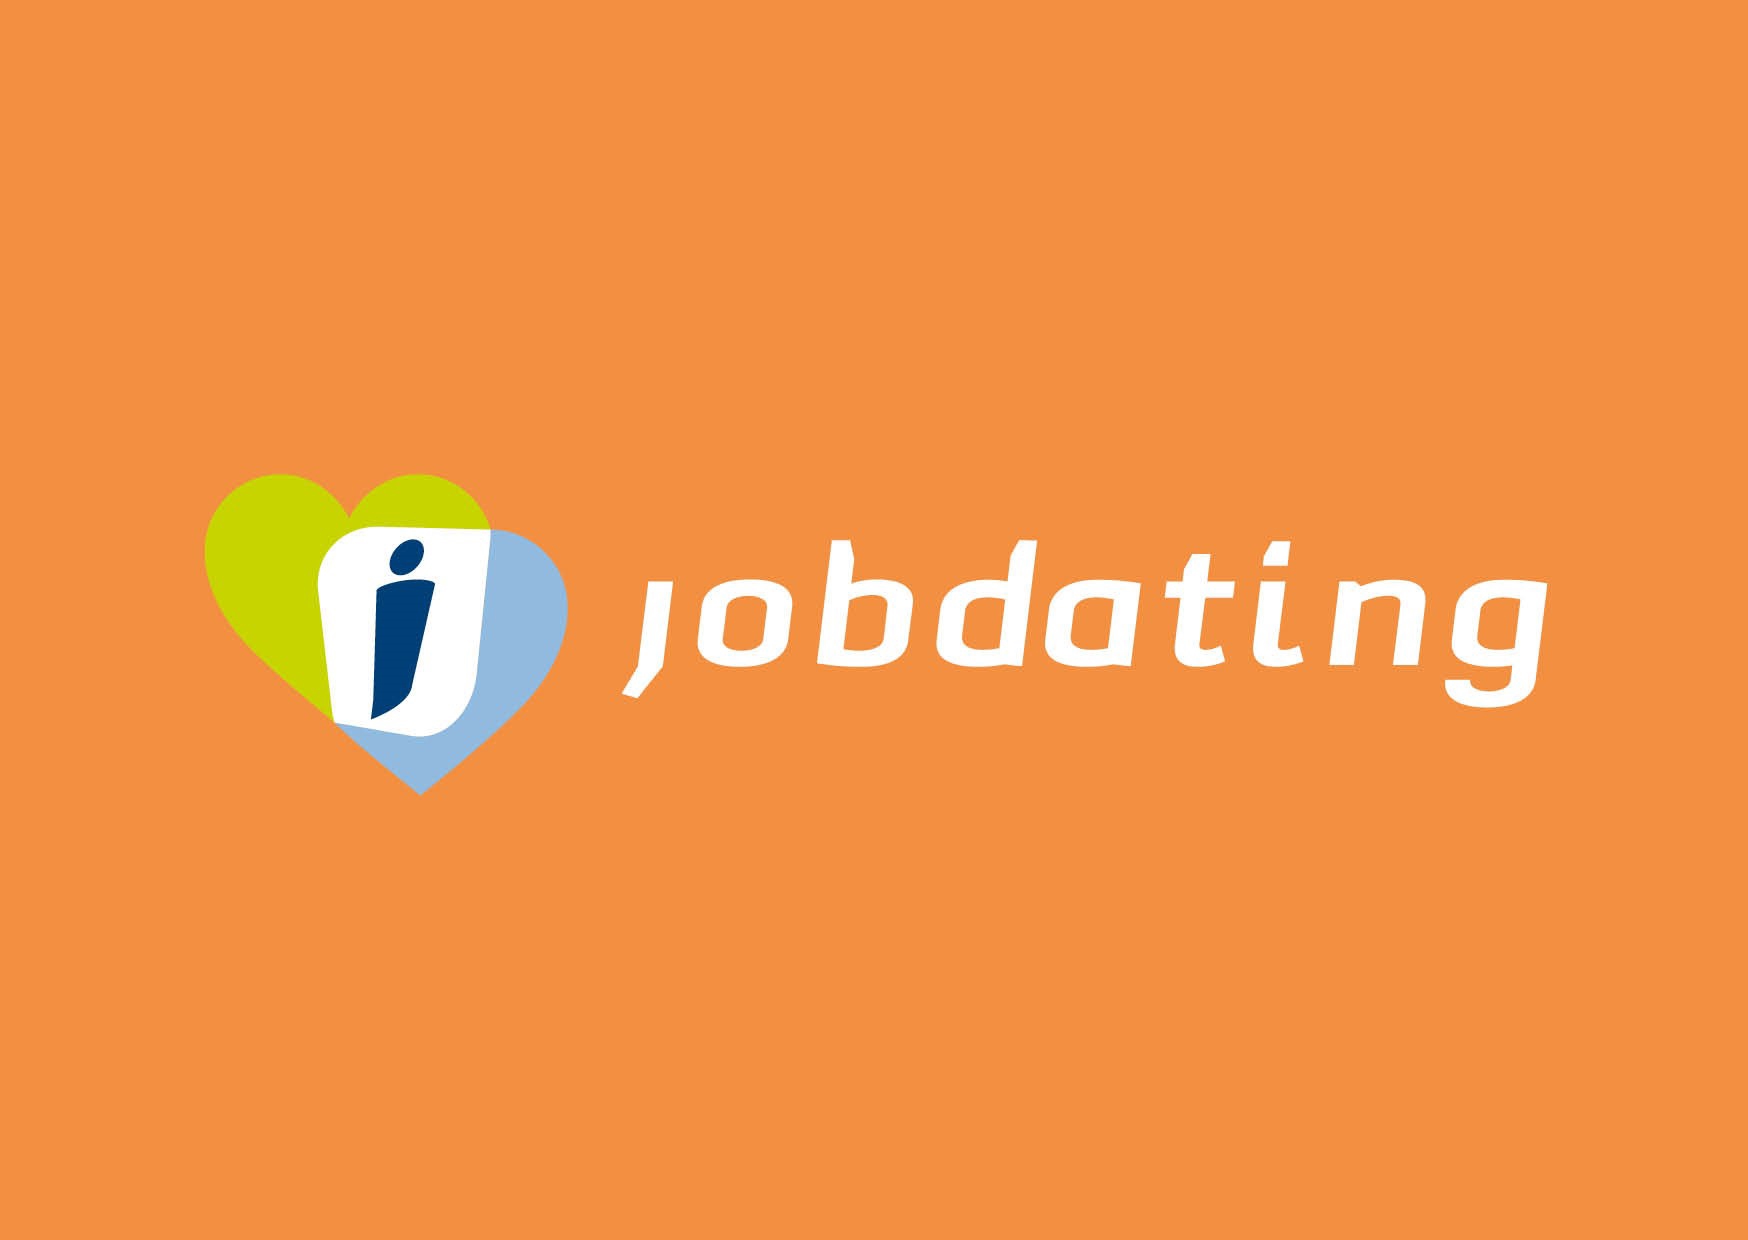 jobdating-logo-24.jpg